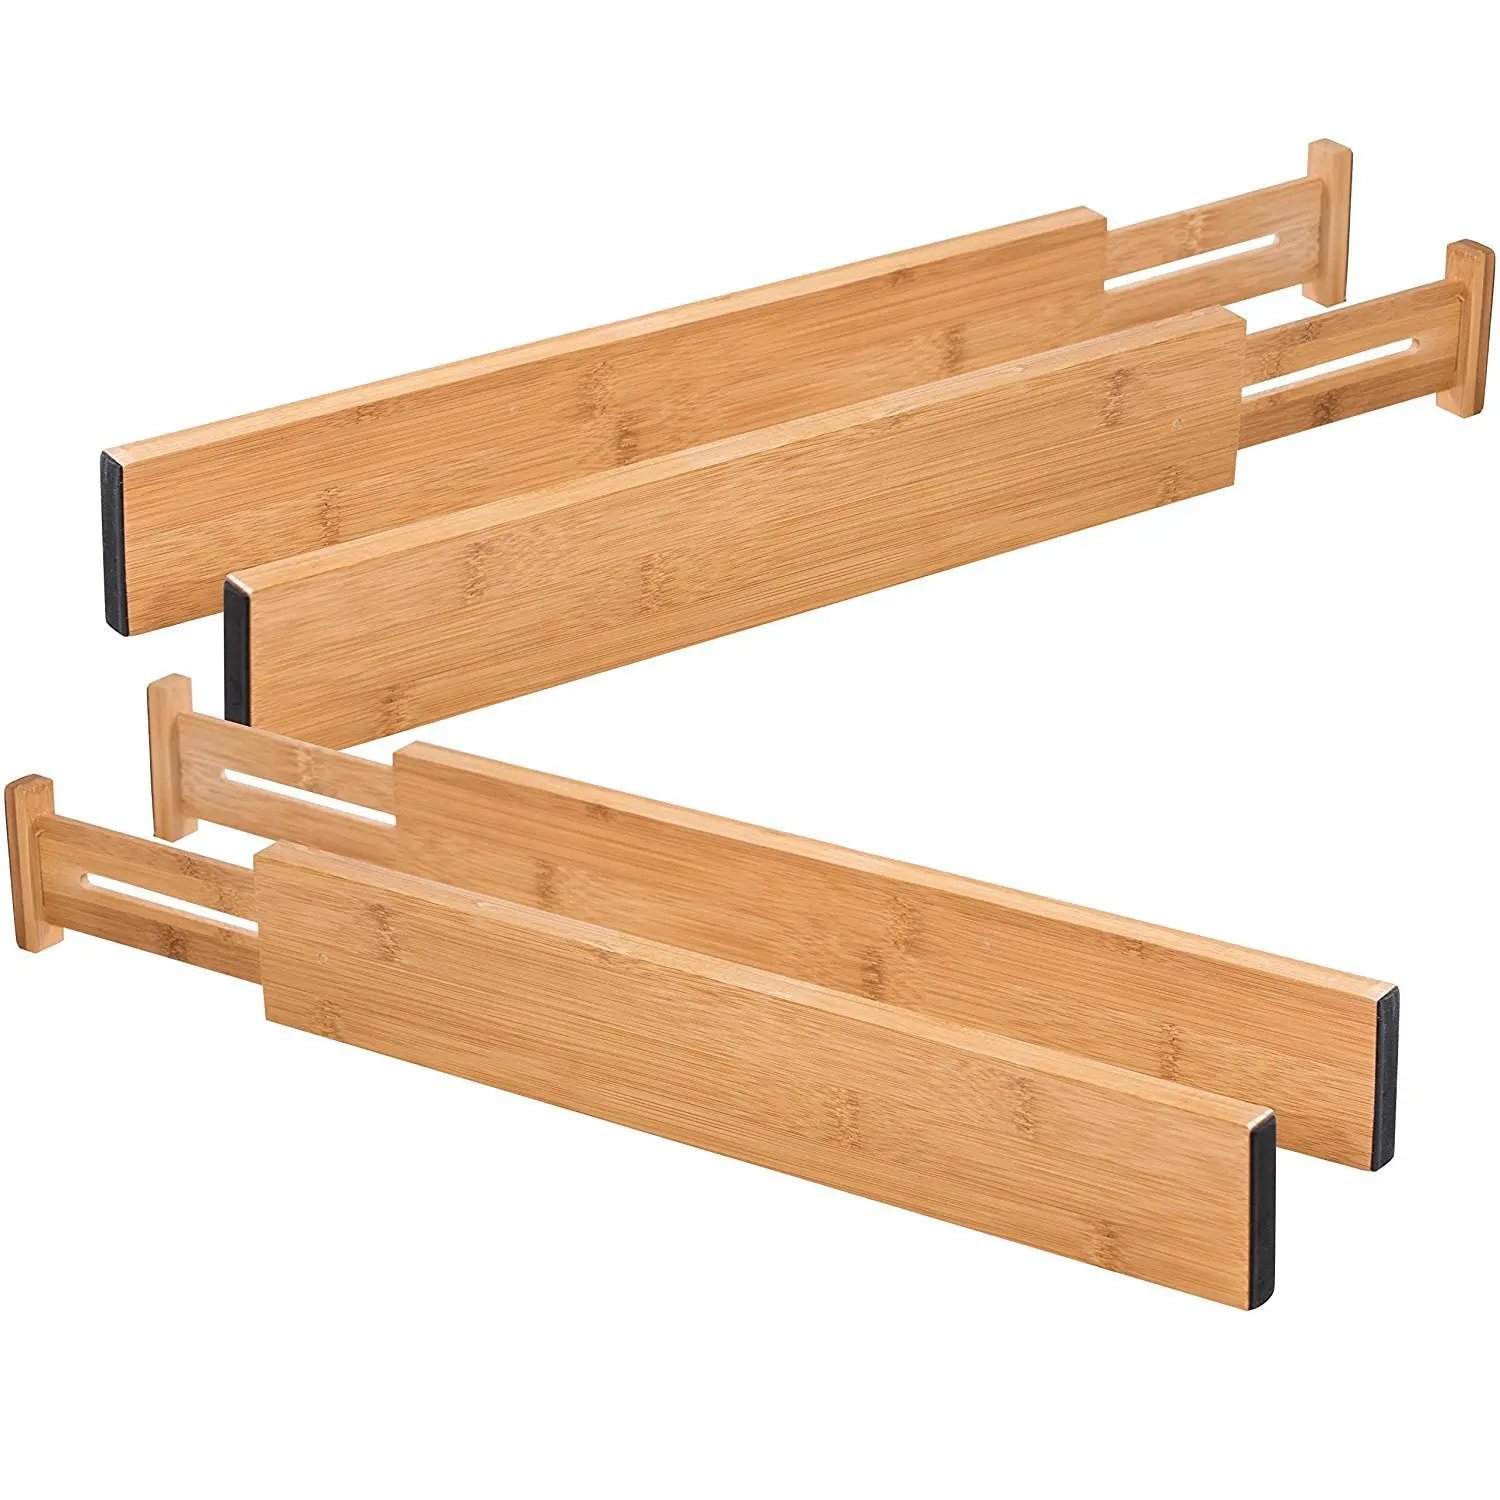 

4 Pack Bamboo Drawer Divider Adjustable Drawer Organizer Dividers,Spring Loaded,Works in Bedroom Dresser Desk, Natural